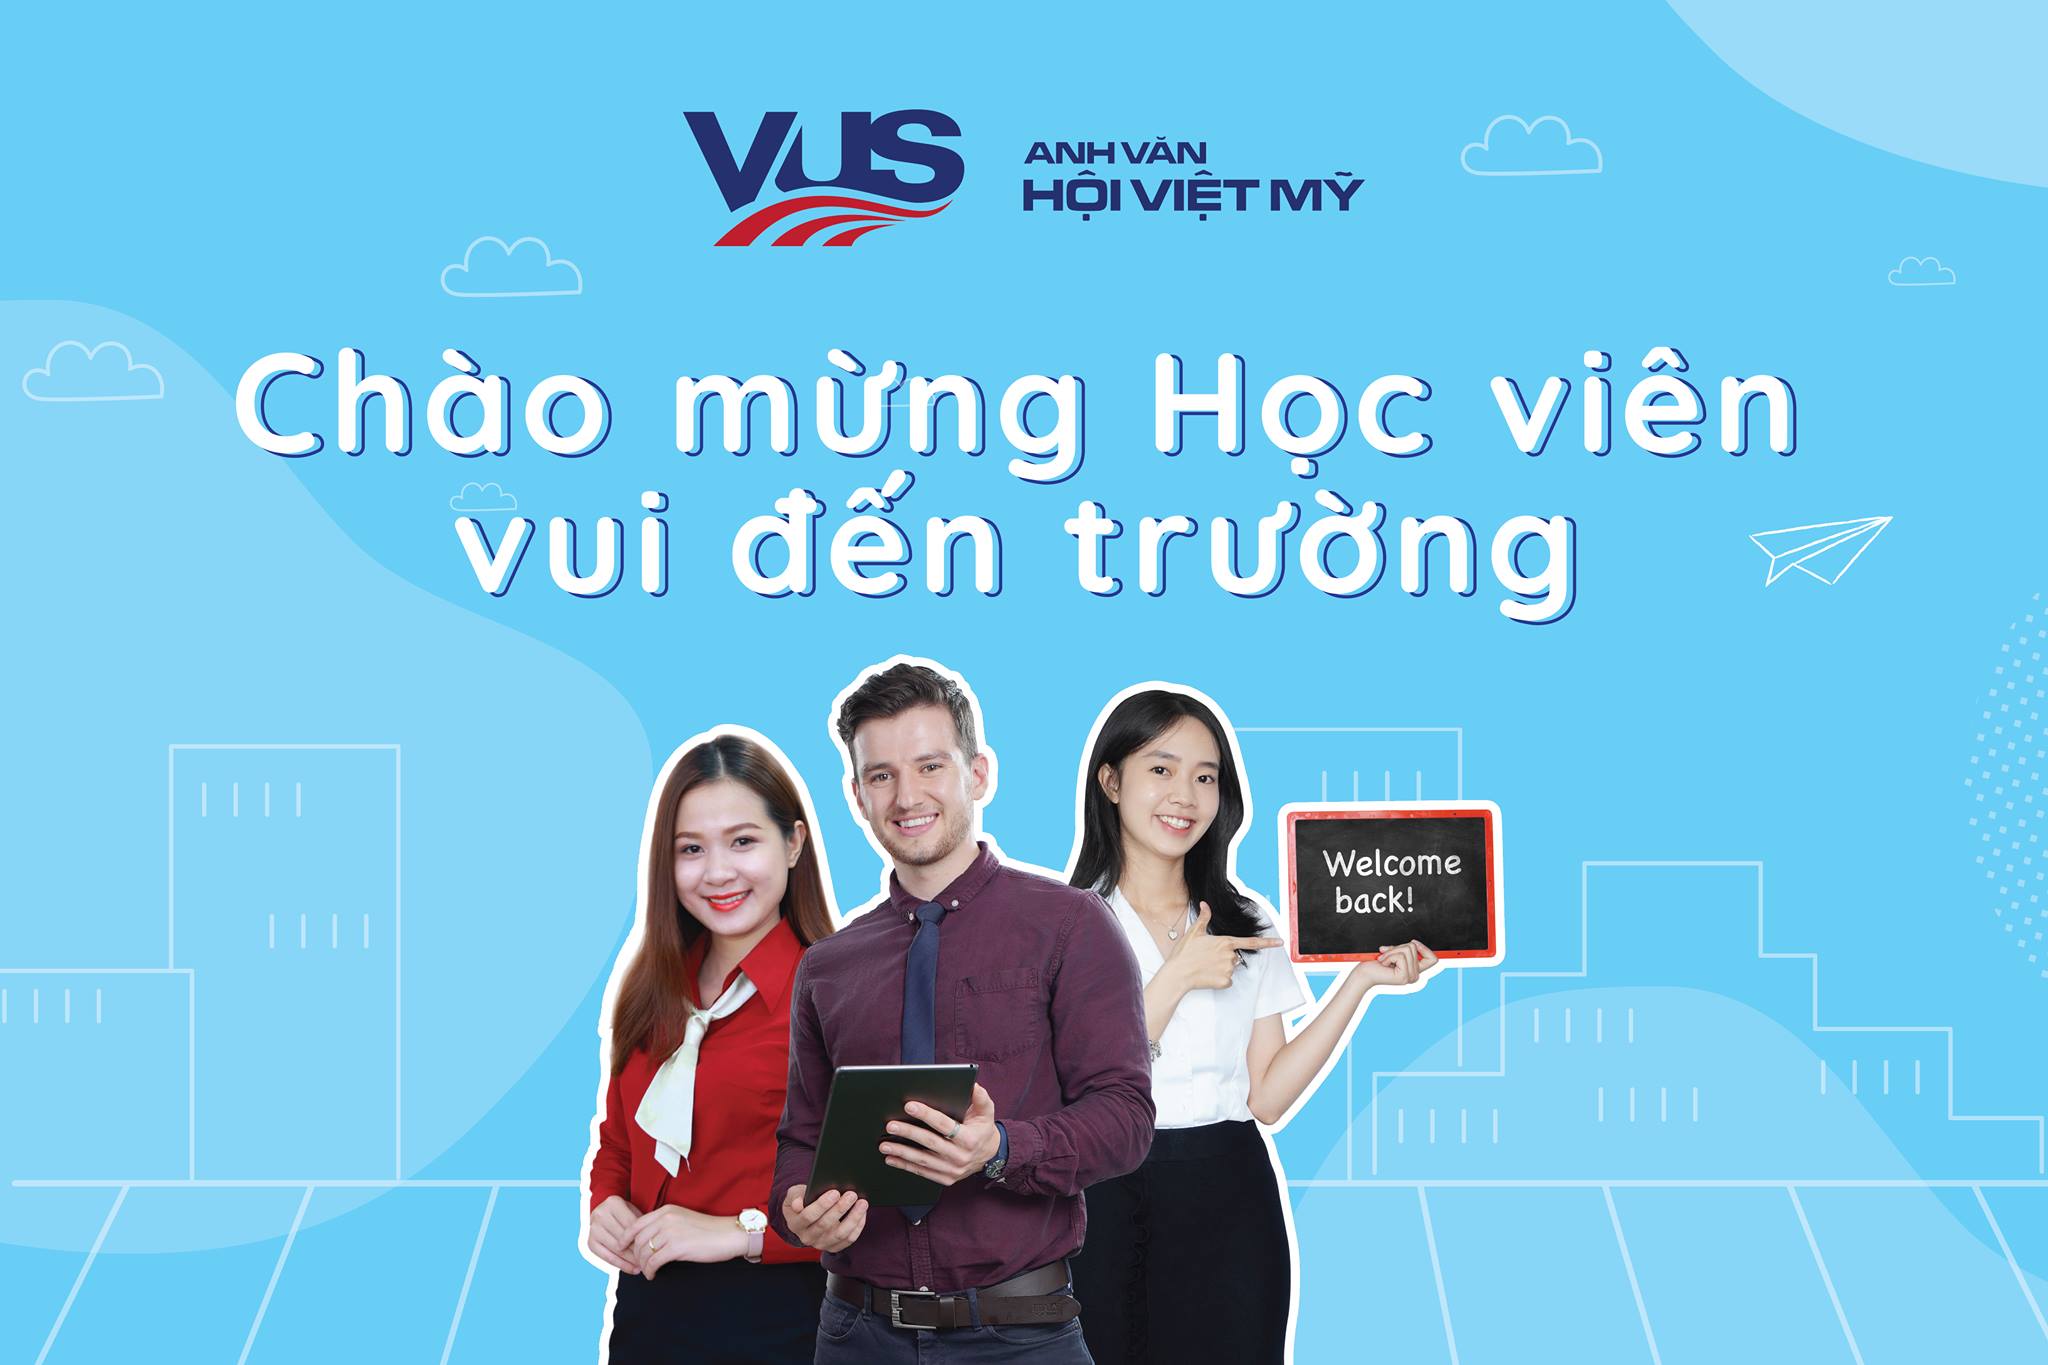 Vus – Anh ngữ hội Việt Mỹ ảnh 1